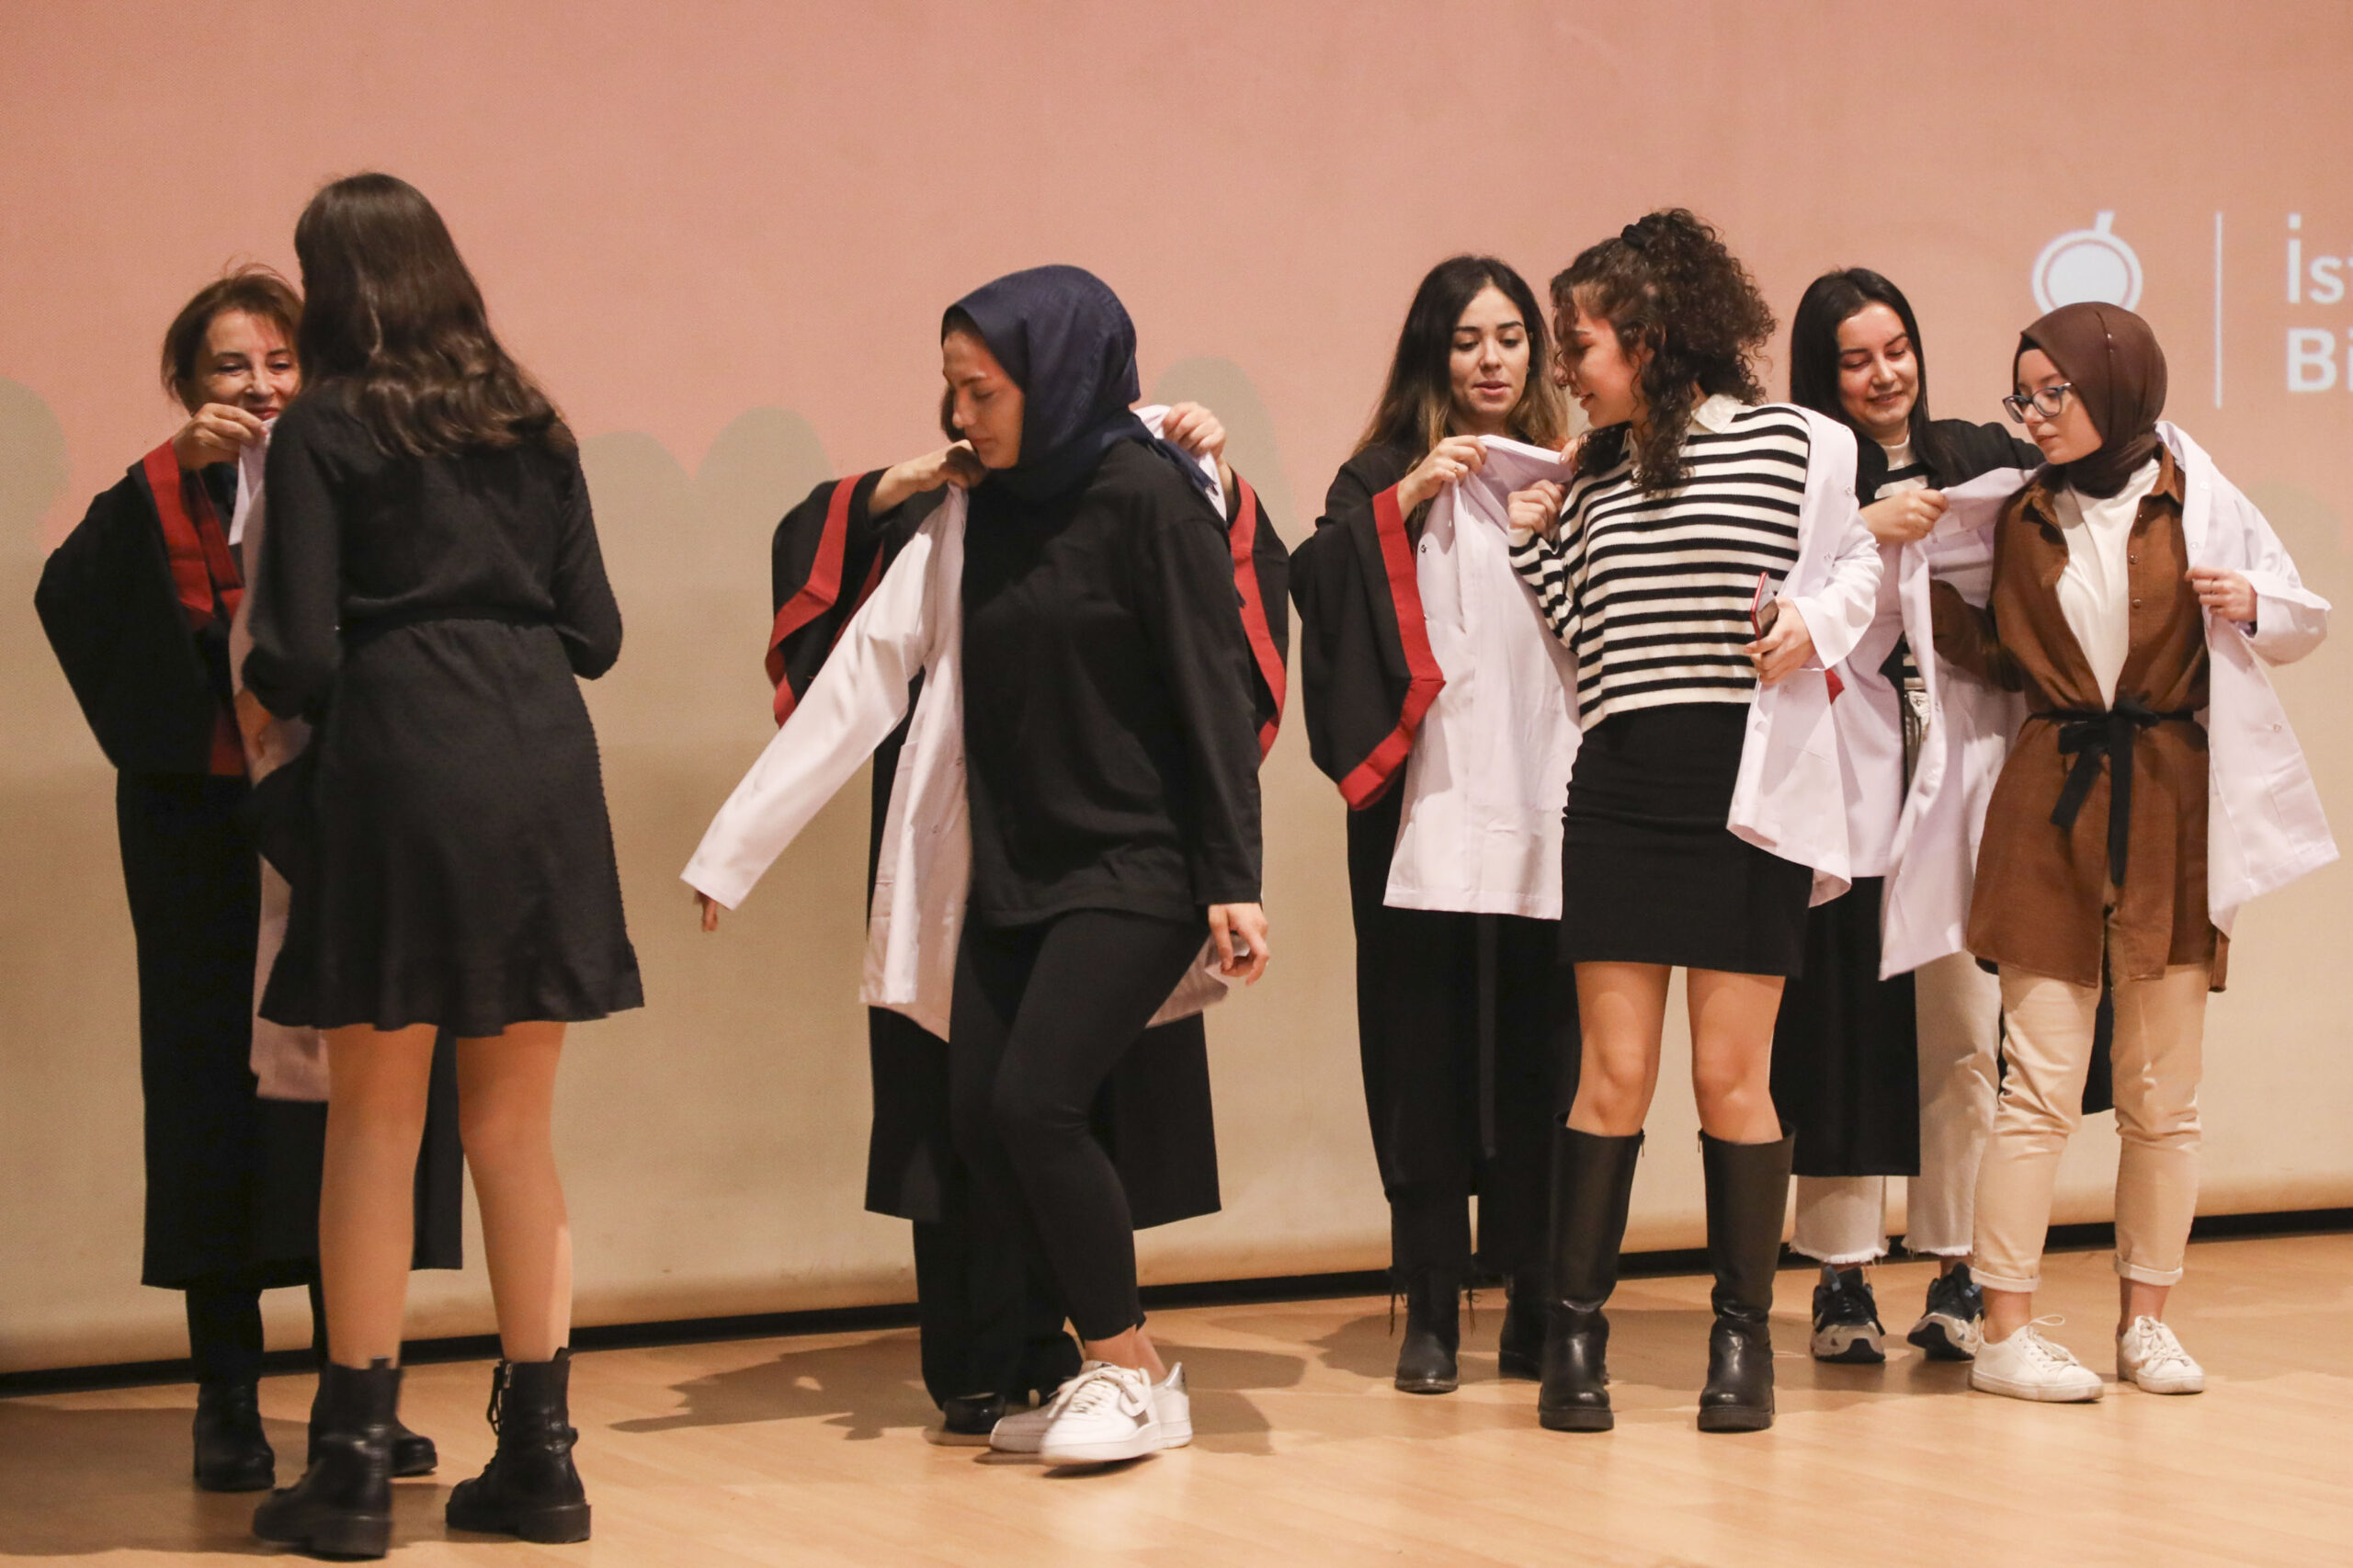 BİLGİ Sağlık öğrencileri ‘Beyaz Önlük Giyme Töreni’nde Mesleğe İlk Adımlarını Attı